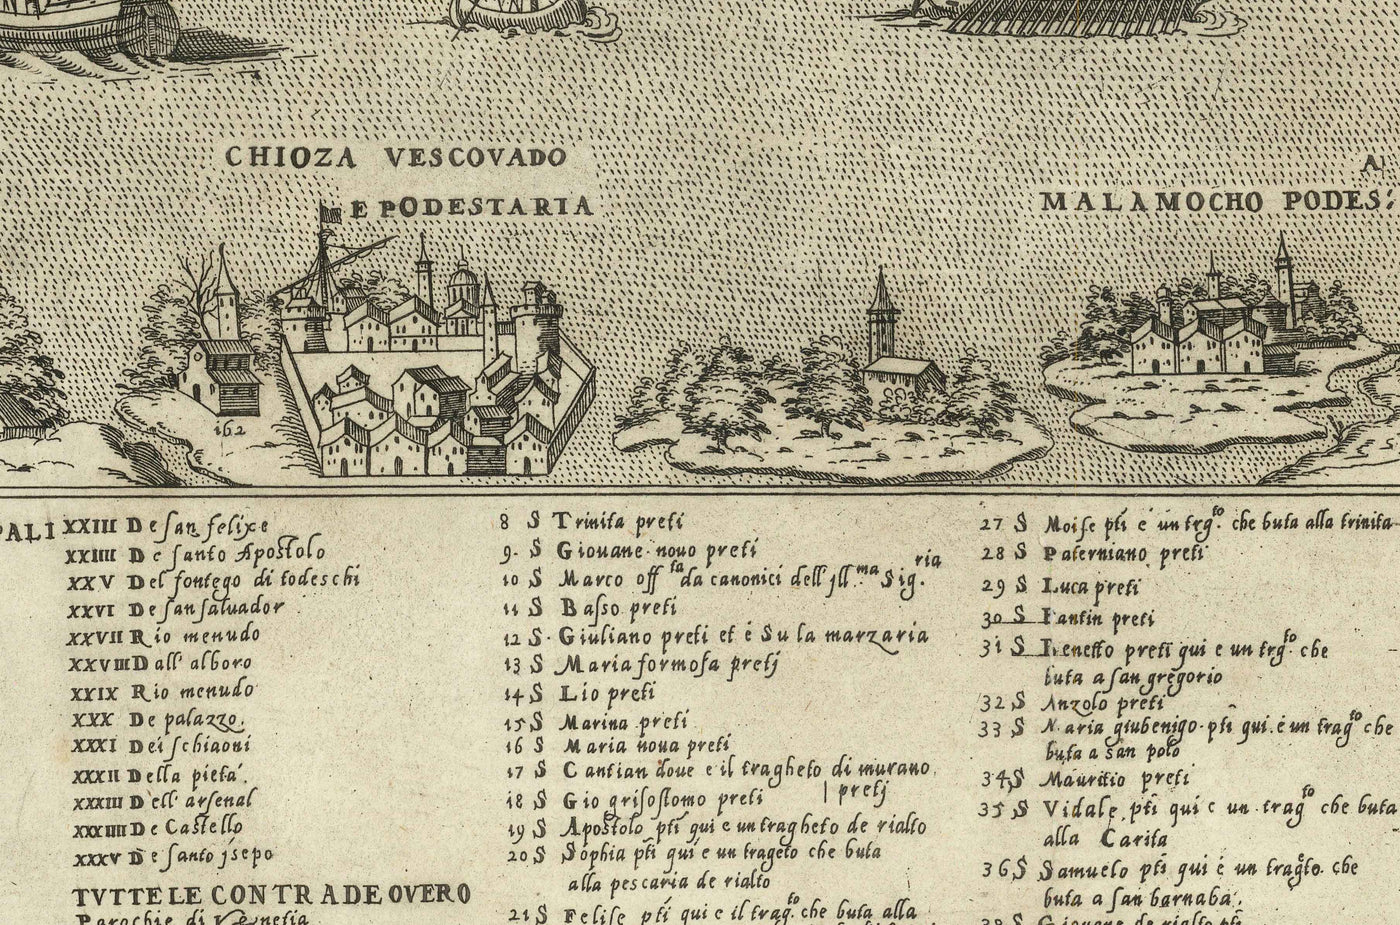 Seltene alte Karte von Venedig, 1570 von Claudio Duchetti - San Giorgio Maggiore, Giudecca, Grand Canal, Handelsschiffe